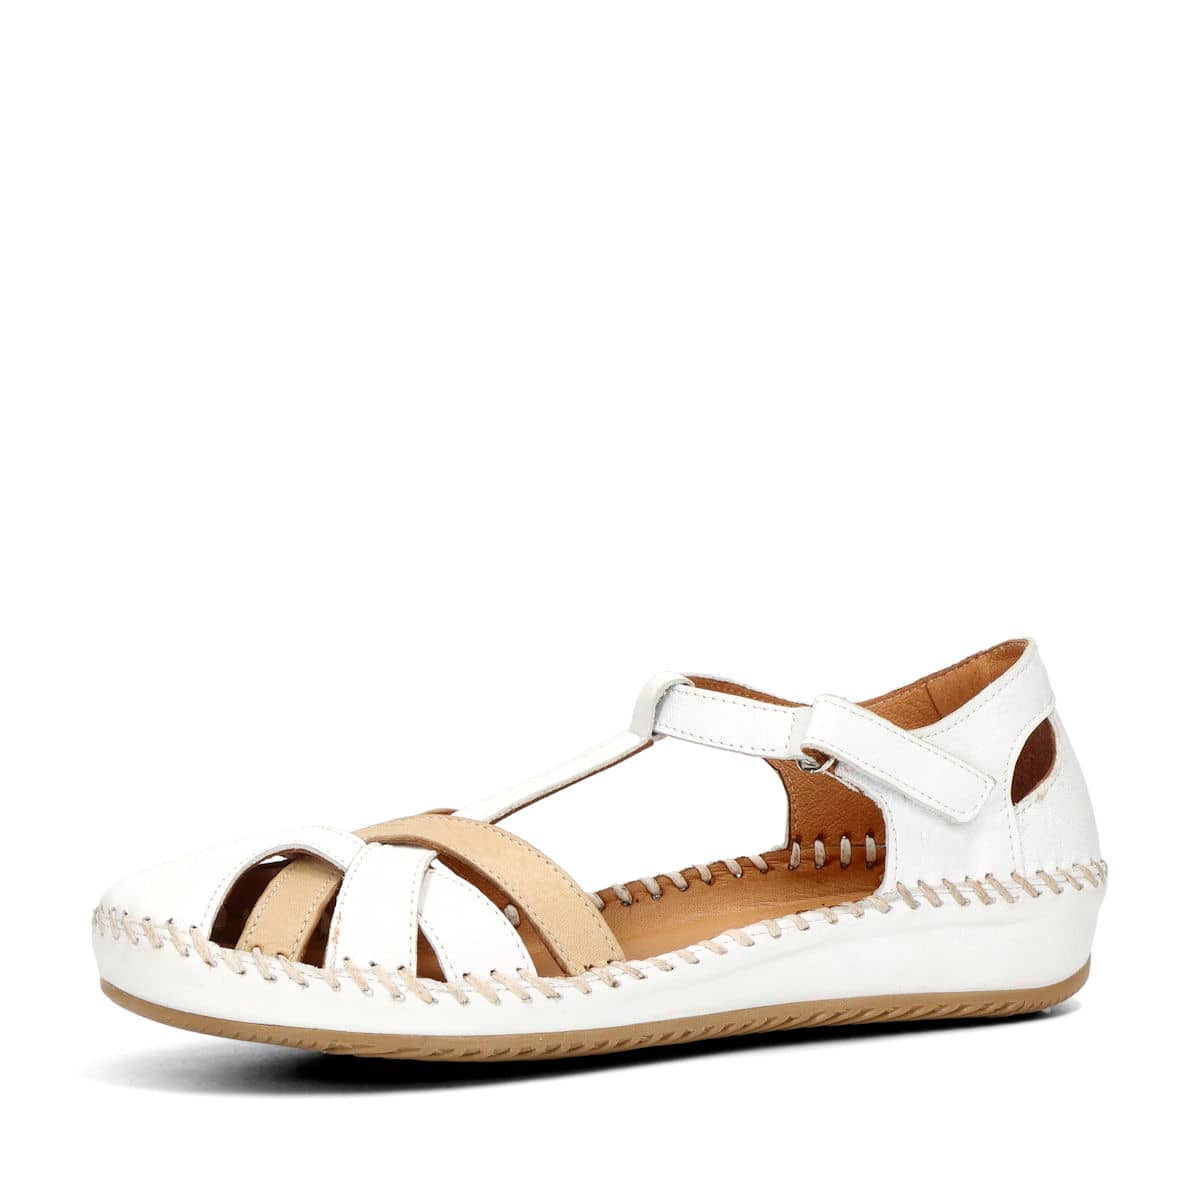 Robel dámské kožené sandály - bílé - 36